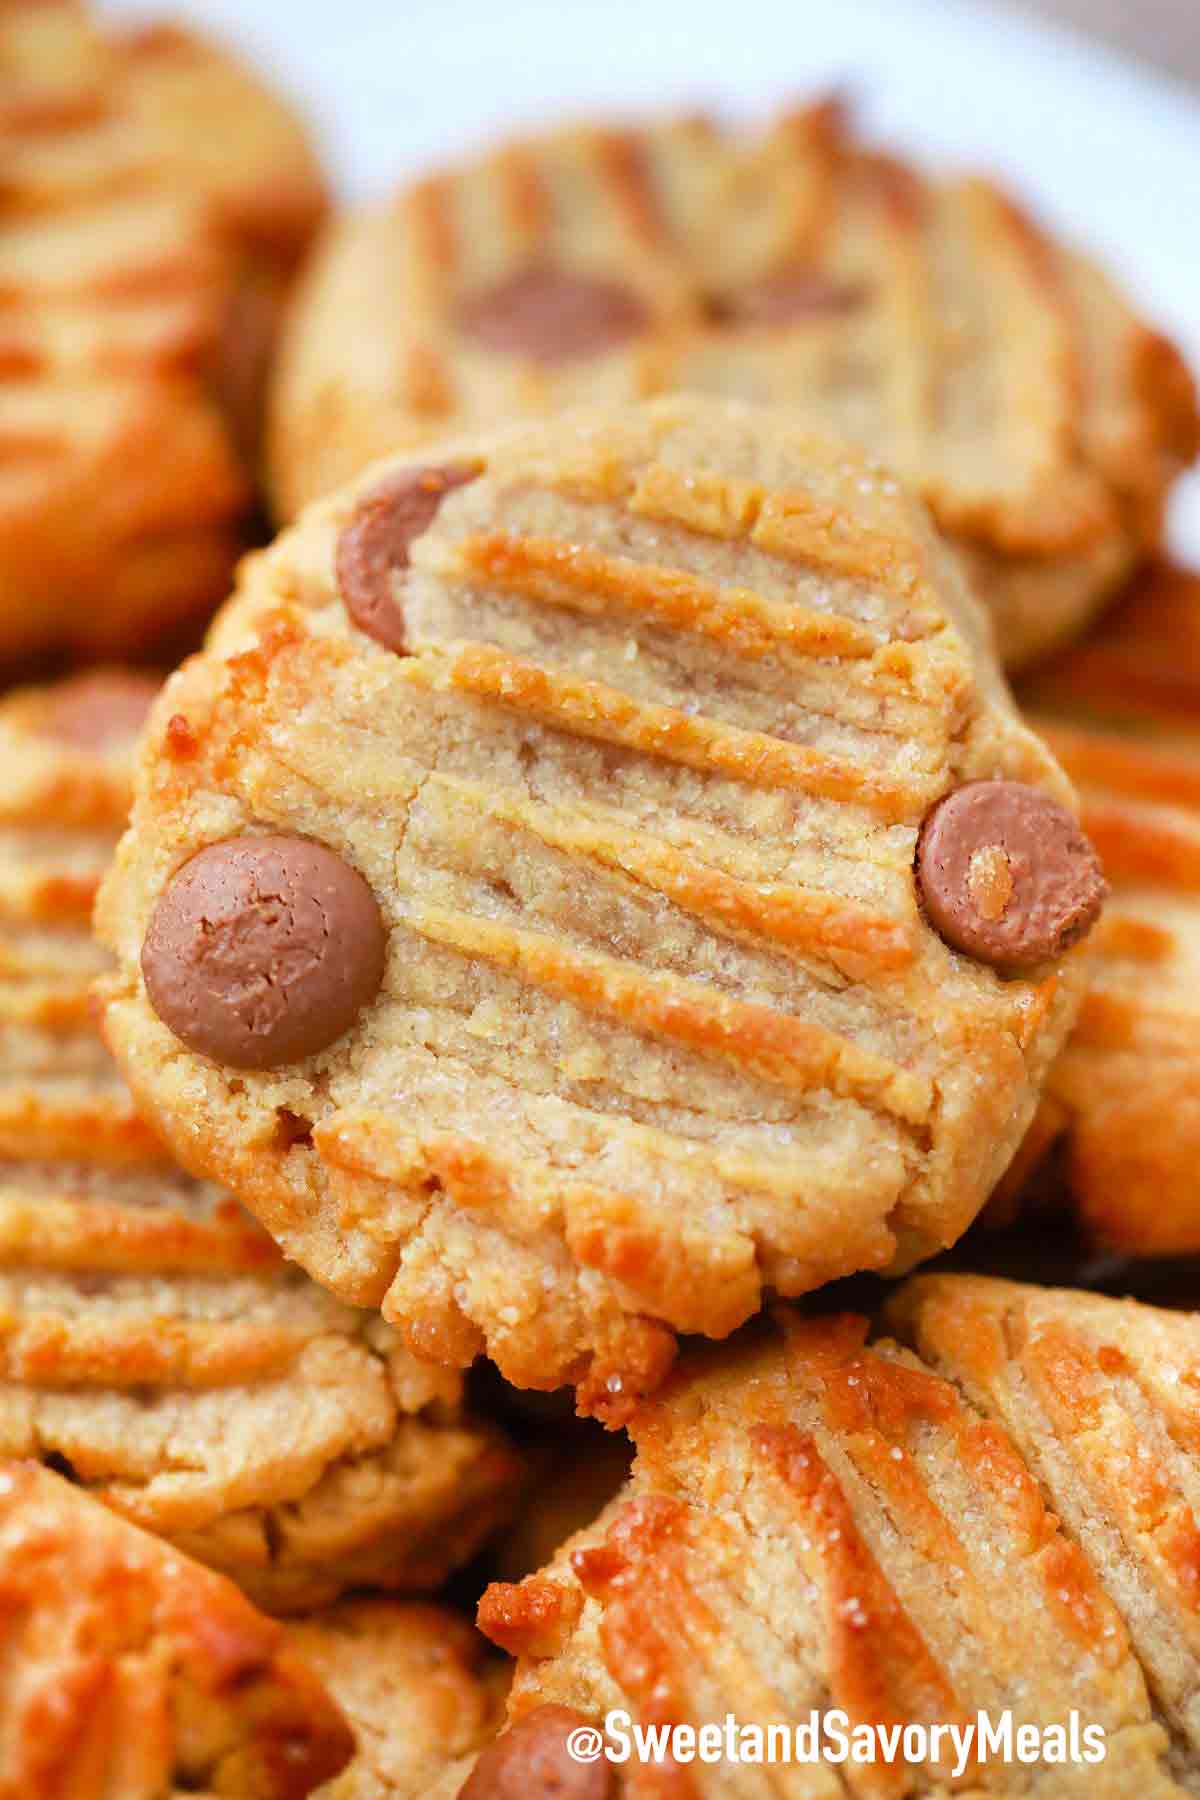 https://sweetandsavorymeals.com/wp-content/uploads/2021/04/air-fryer-peanut-butter-cookies-recipe.jpg